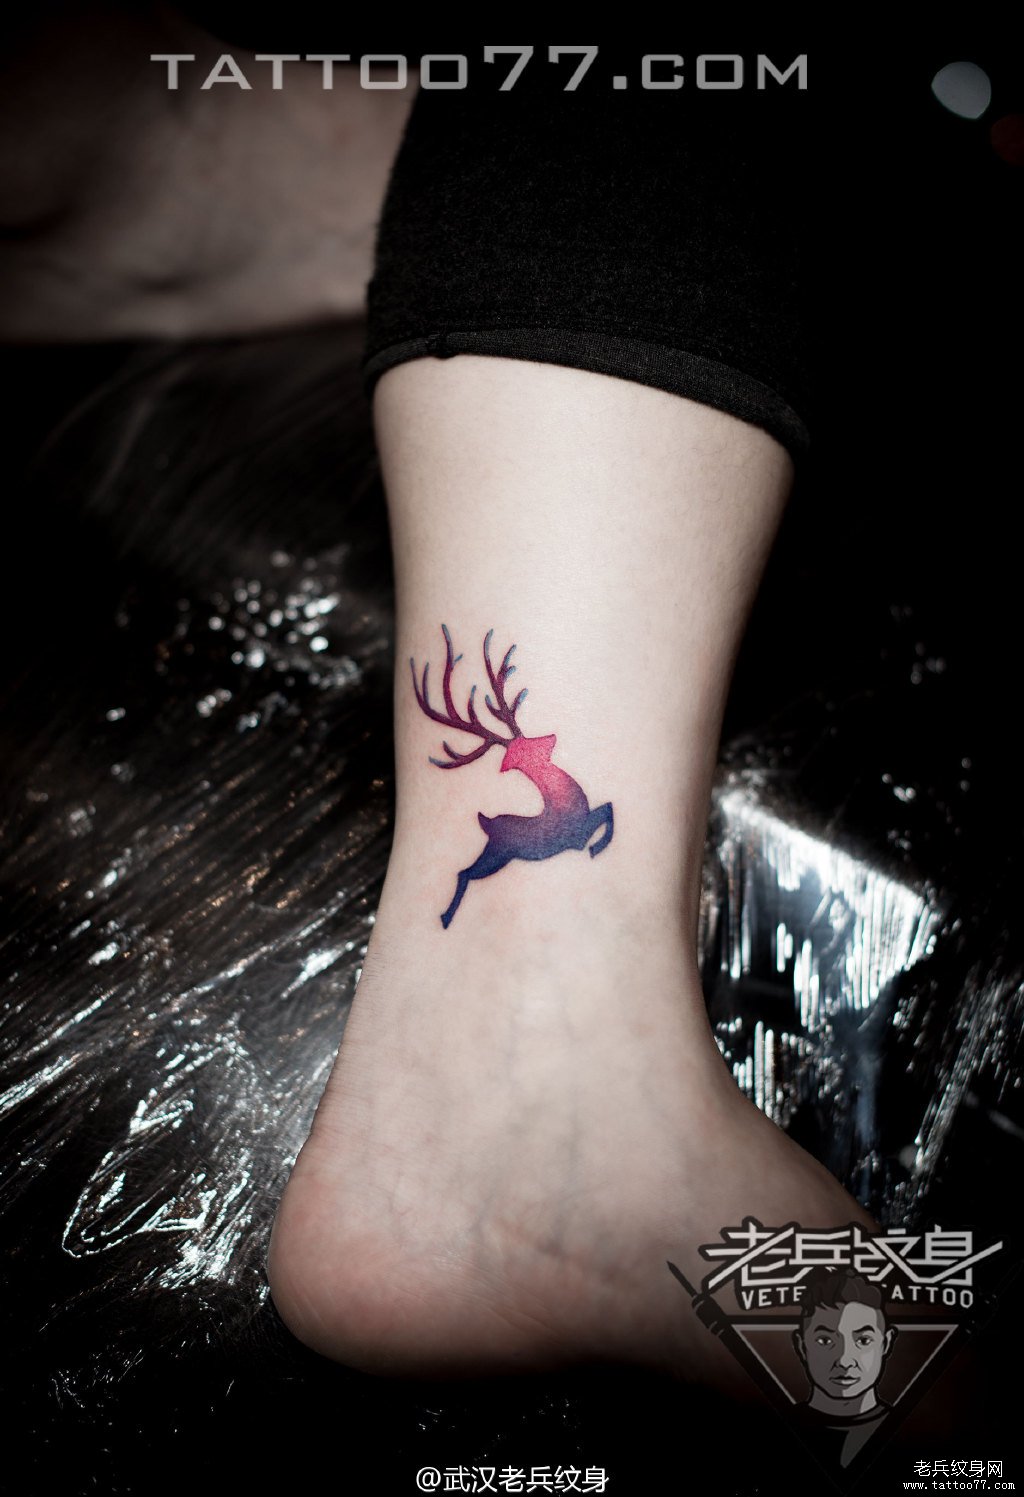 脚踝彩色小鹿纹身图案作品